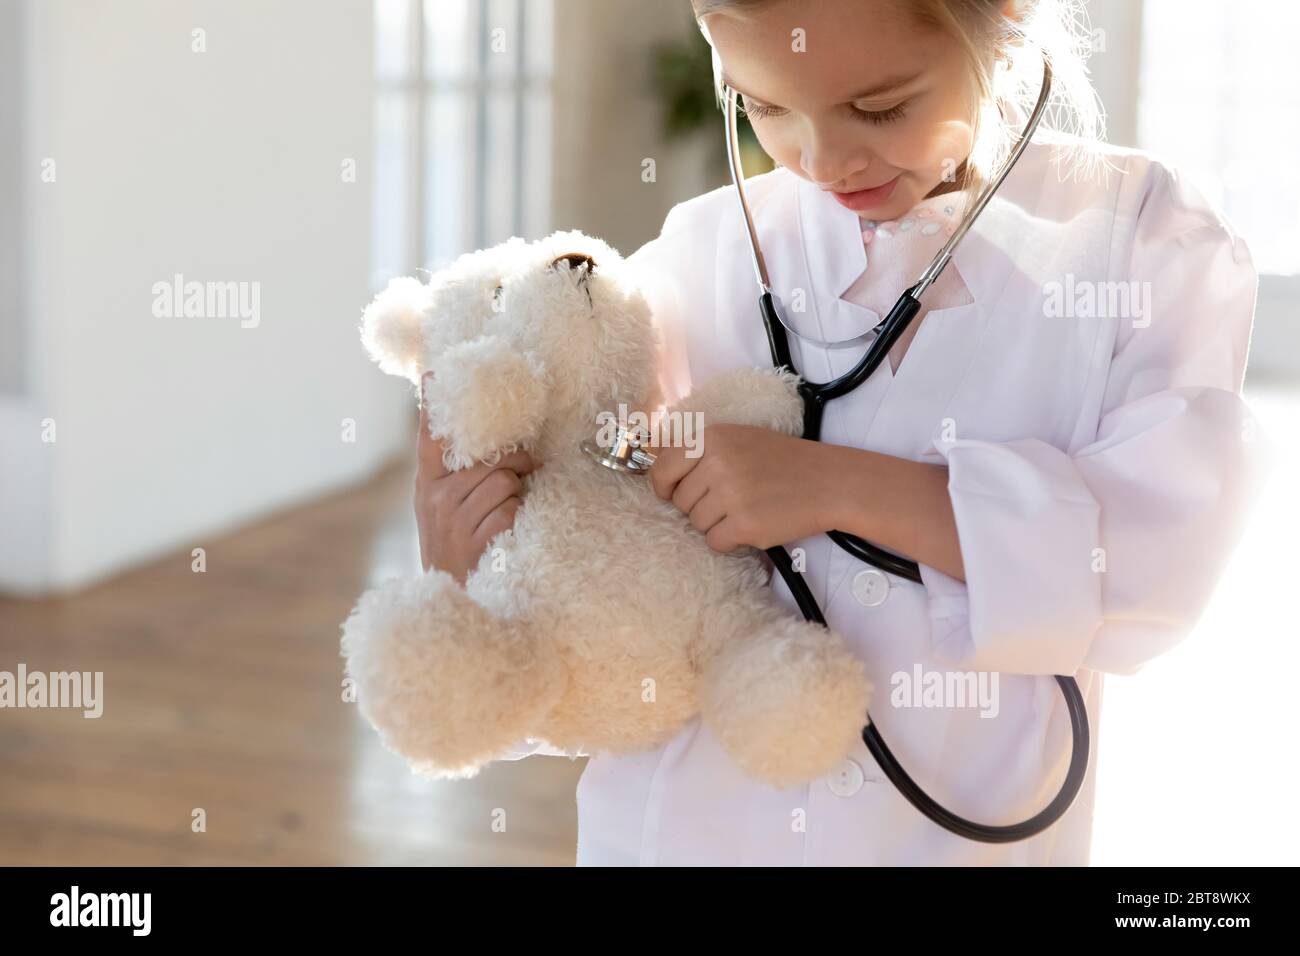 Bambina in uniforme bianca esamina peluche giocattolo Foto Stock